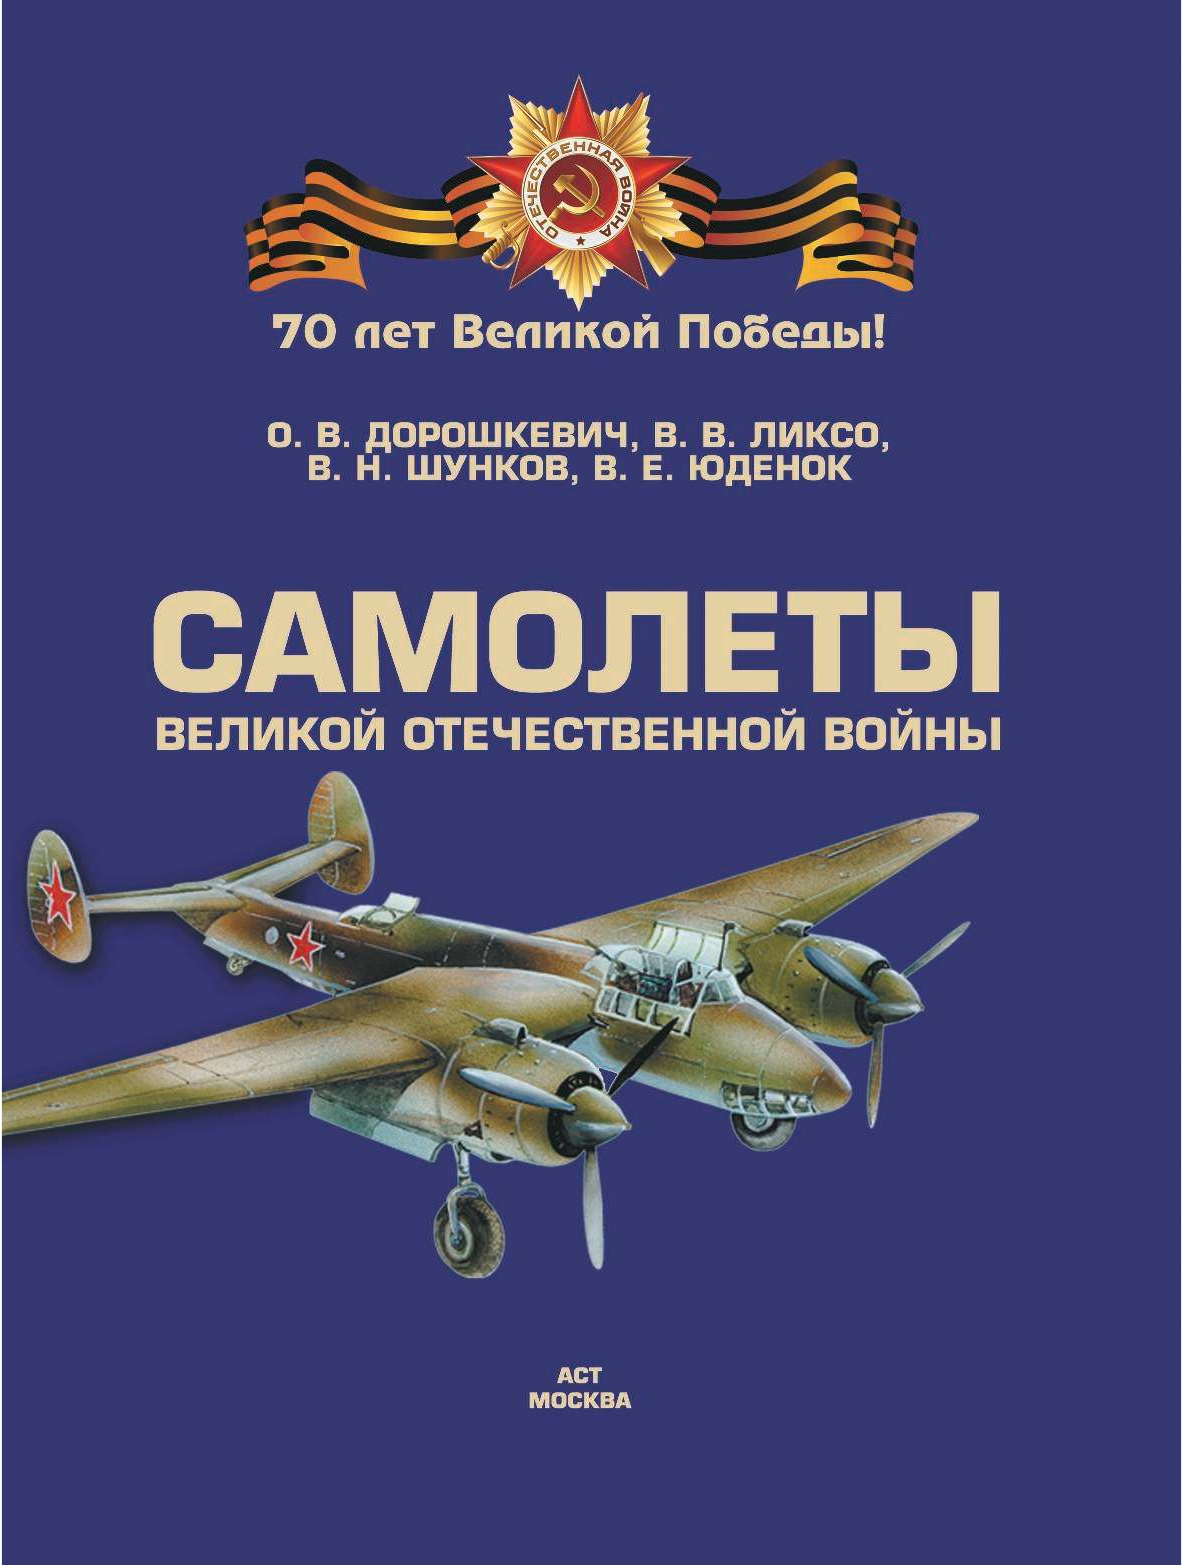  Самолеты Великой Отечественной войны - страница 2